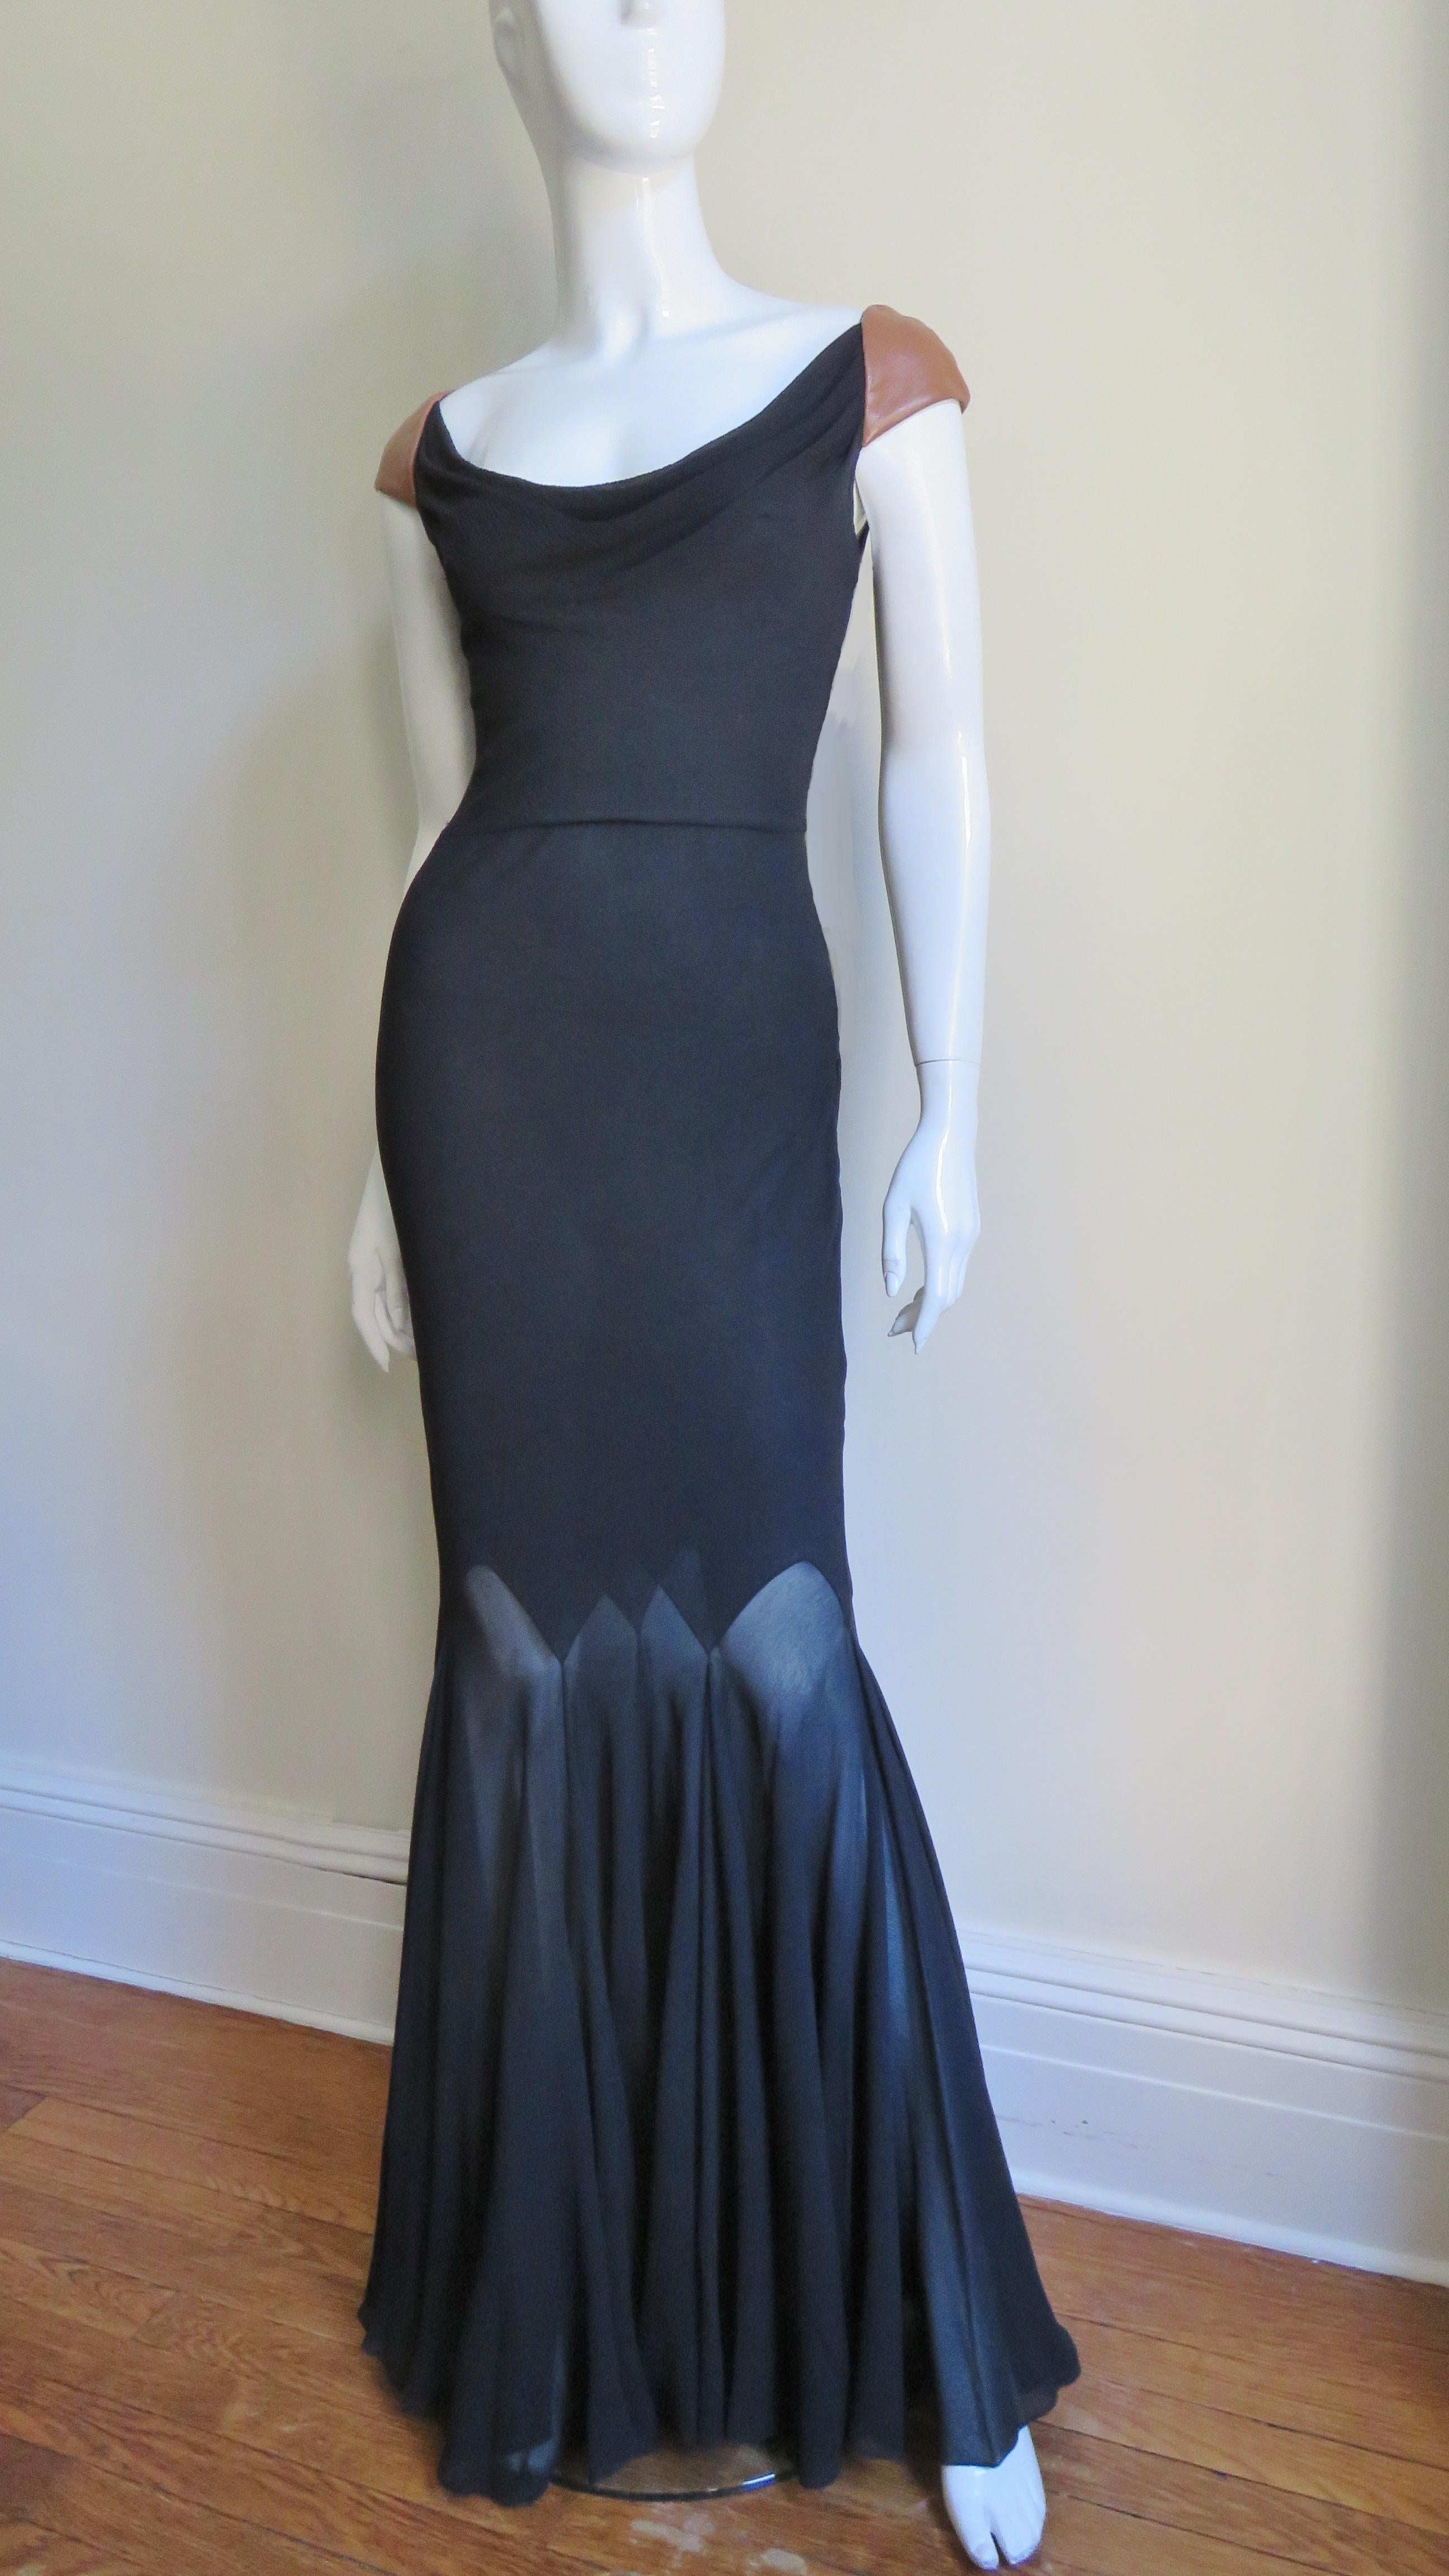 Une magnifique robe longue en soie noire de Gianni Versace Couture.  Il présente une encolure dégagée à l'avant, une découpe profonde dans le dos et de fabuleuses épaules en cuir fauve.  Elle est ajustée au niveau des cuisses, puis jointe autour de